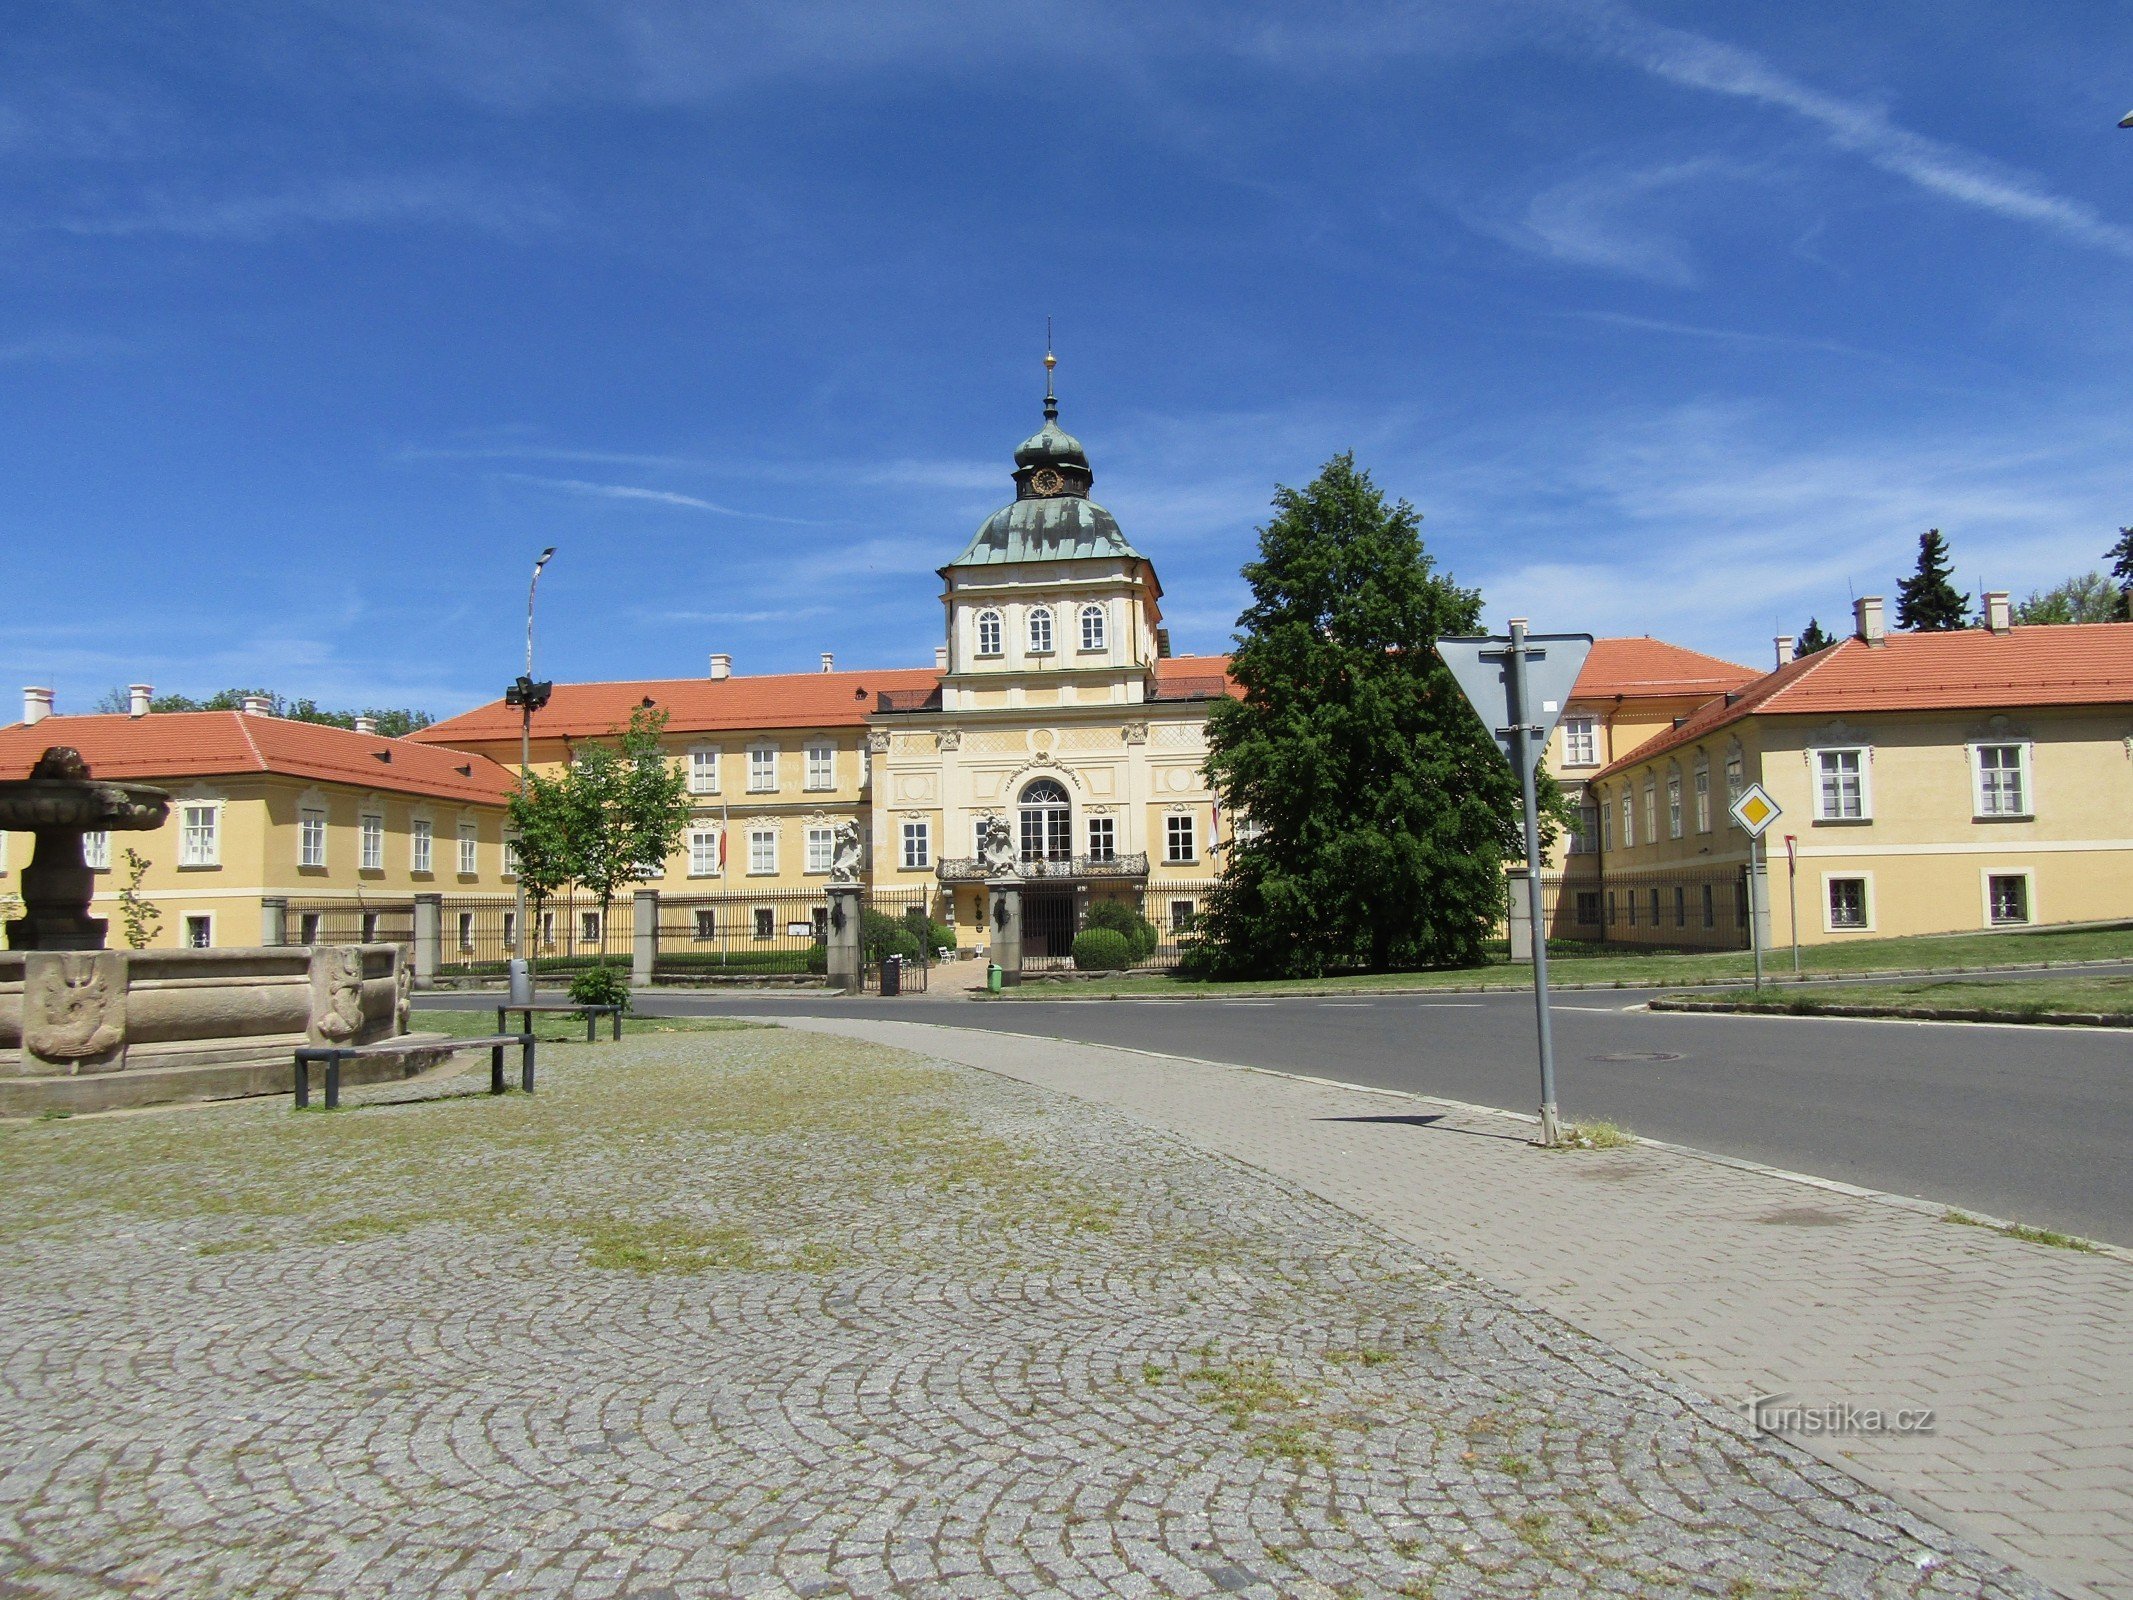 Régi és új kastély Hořovice-ban